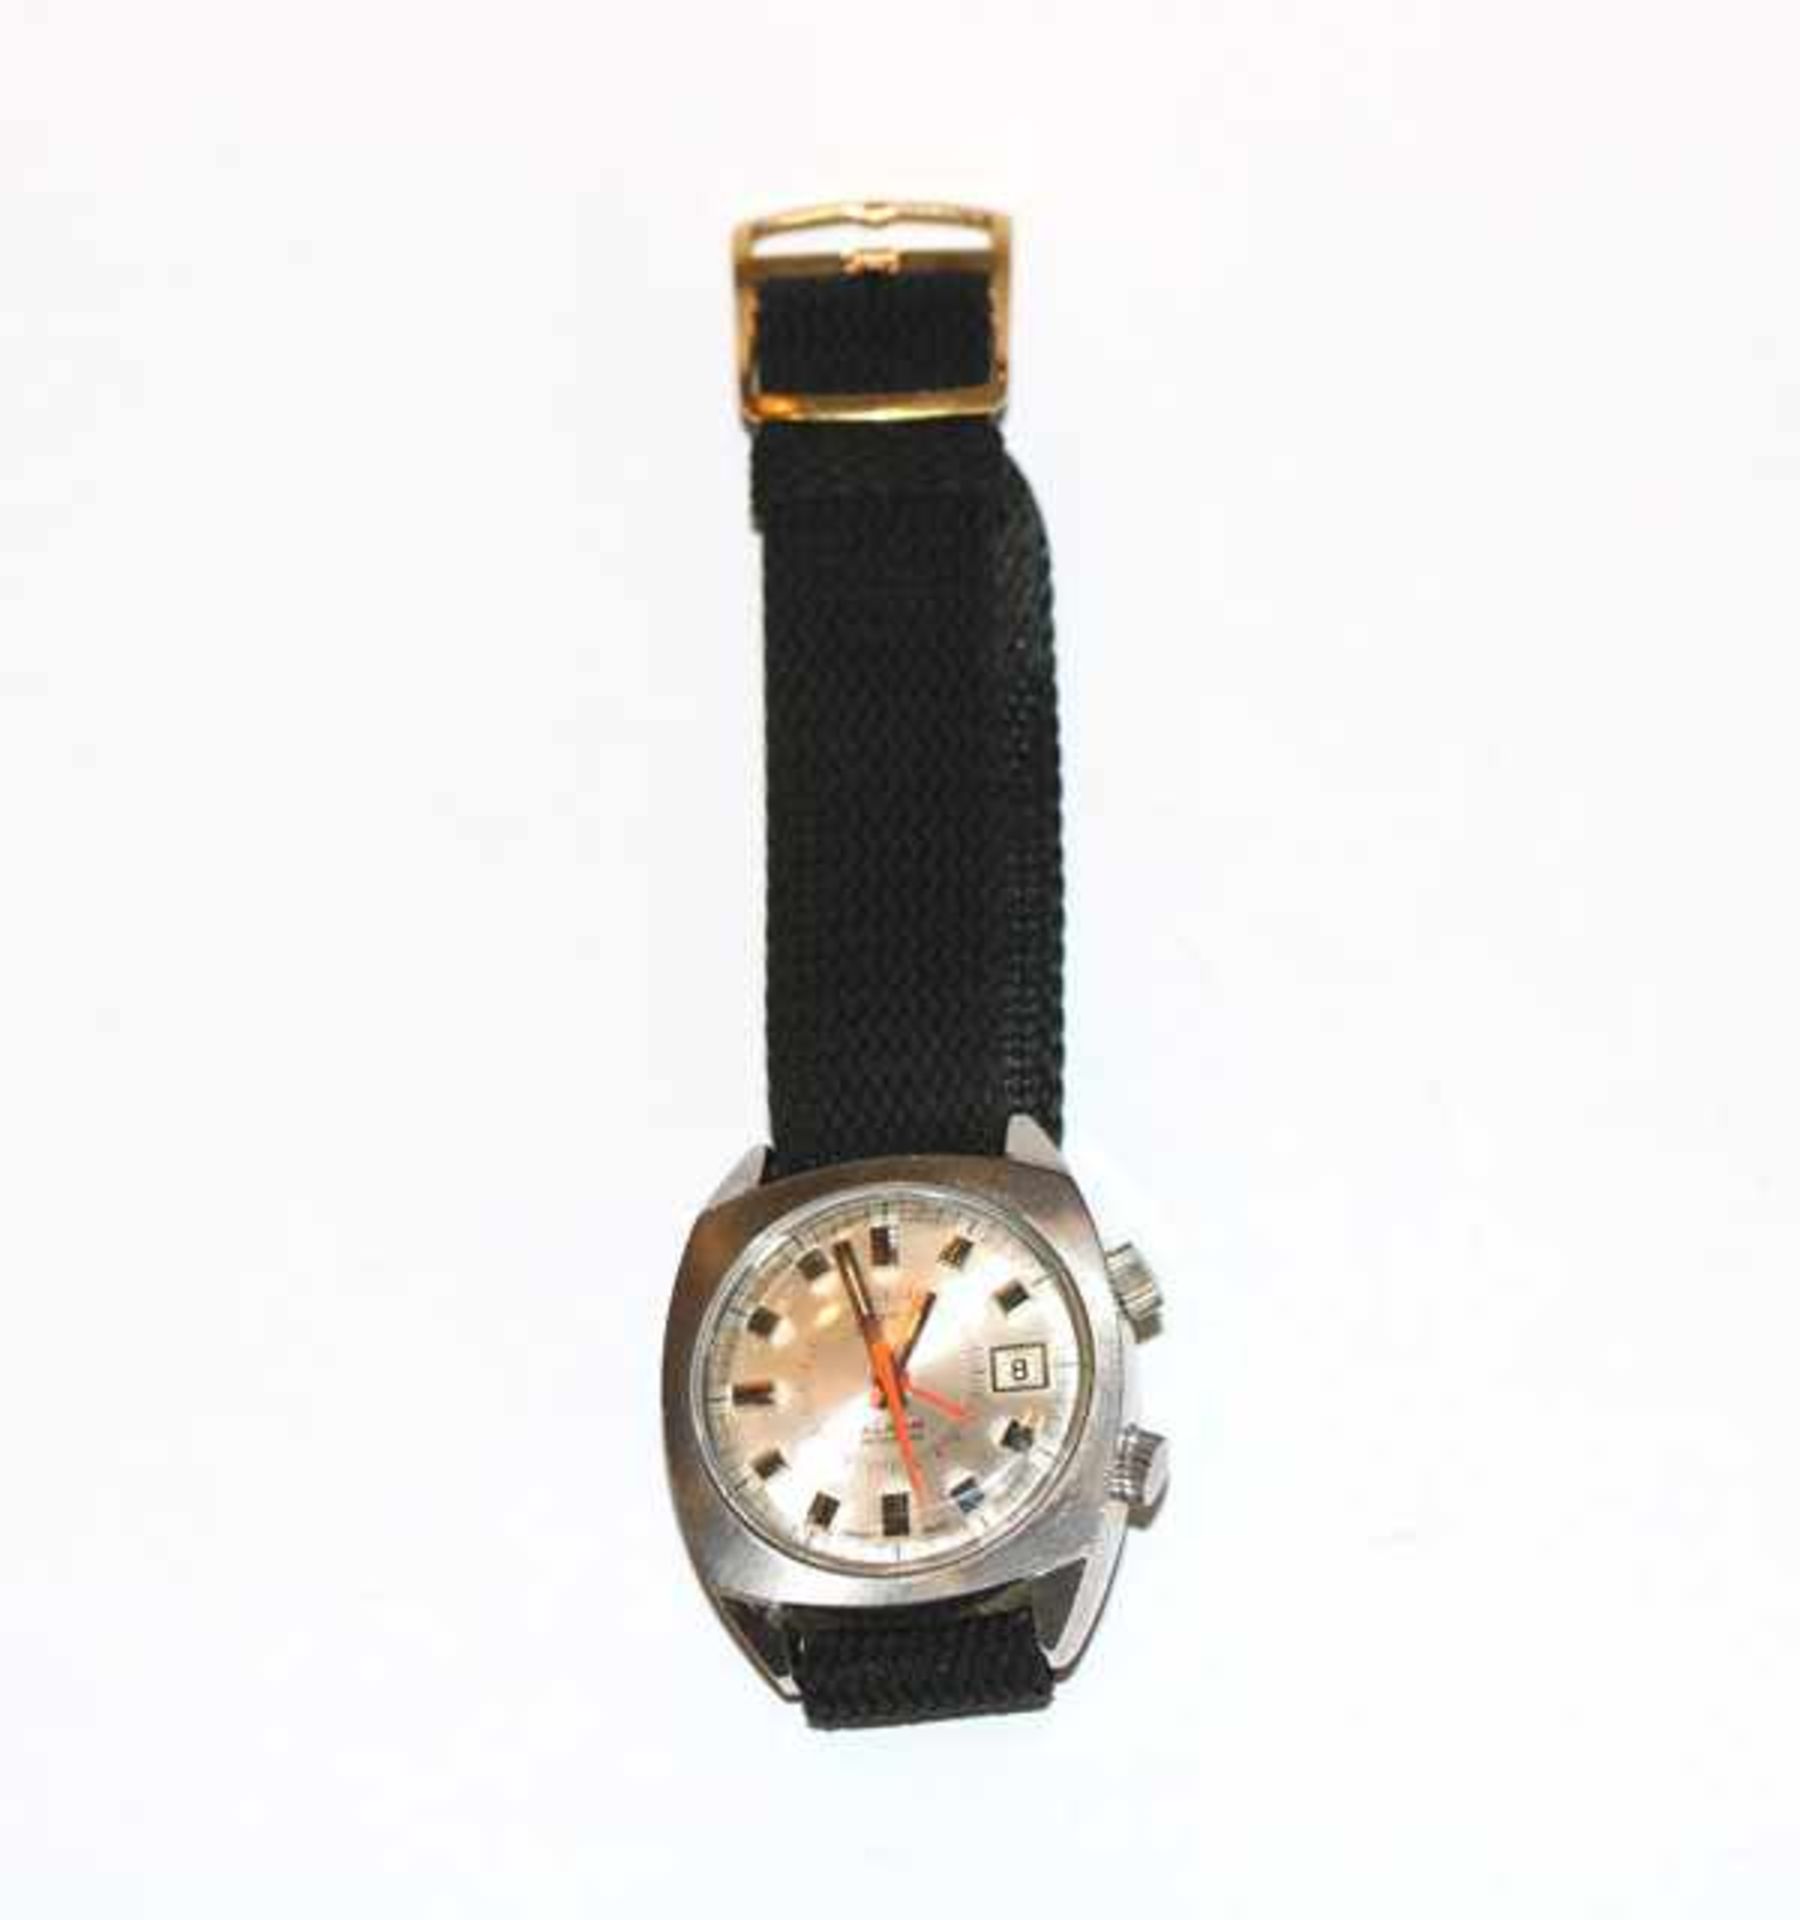 ARSA Armbanduhr mit Datum und Wecker, mechanisches Werk um 1970, intakt, an schwarzem Armband